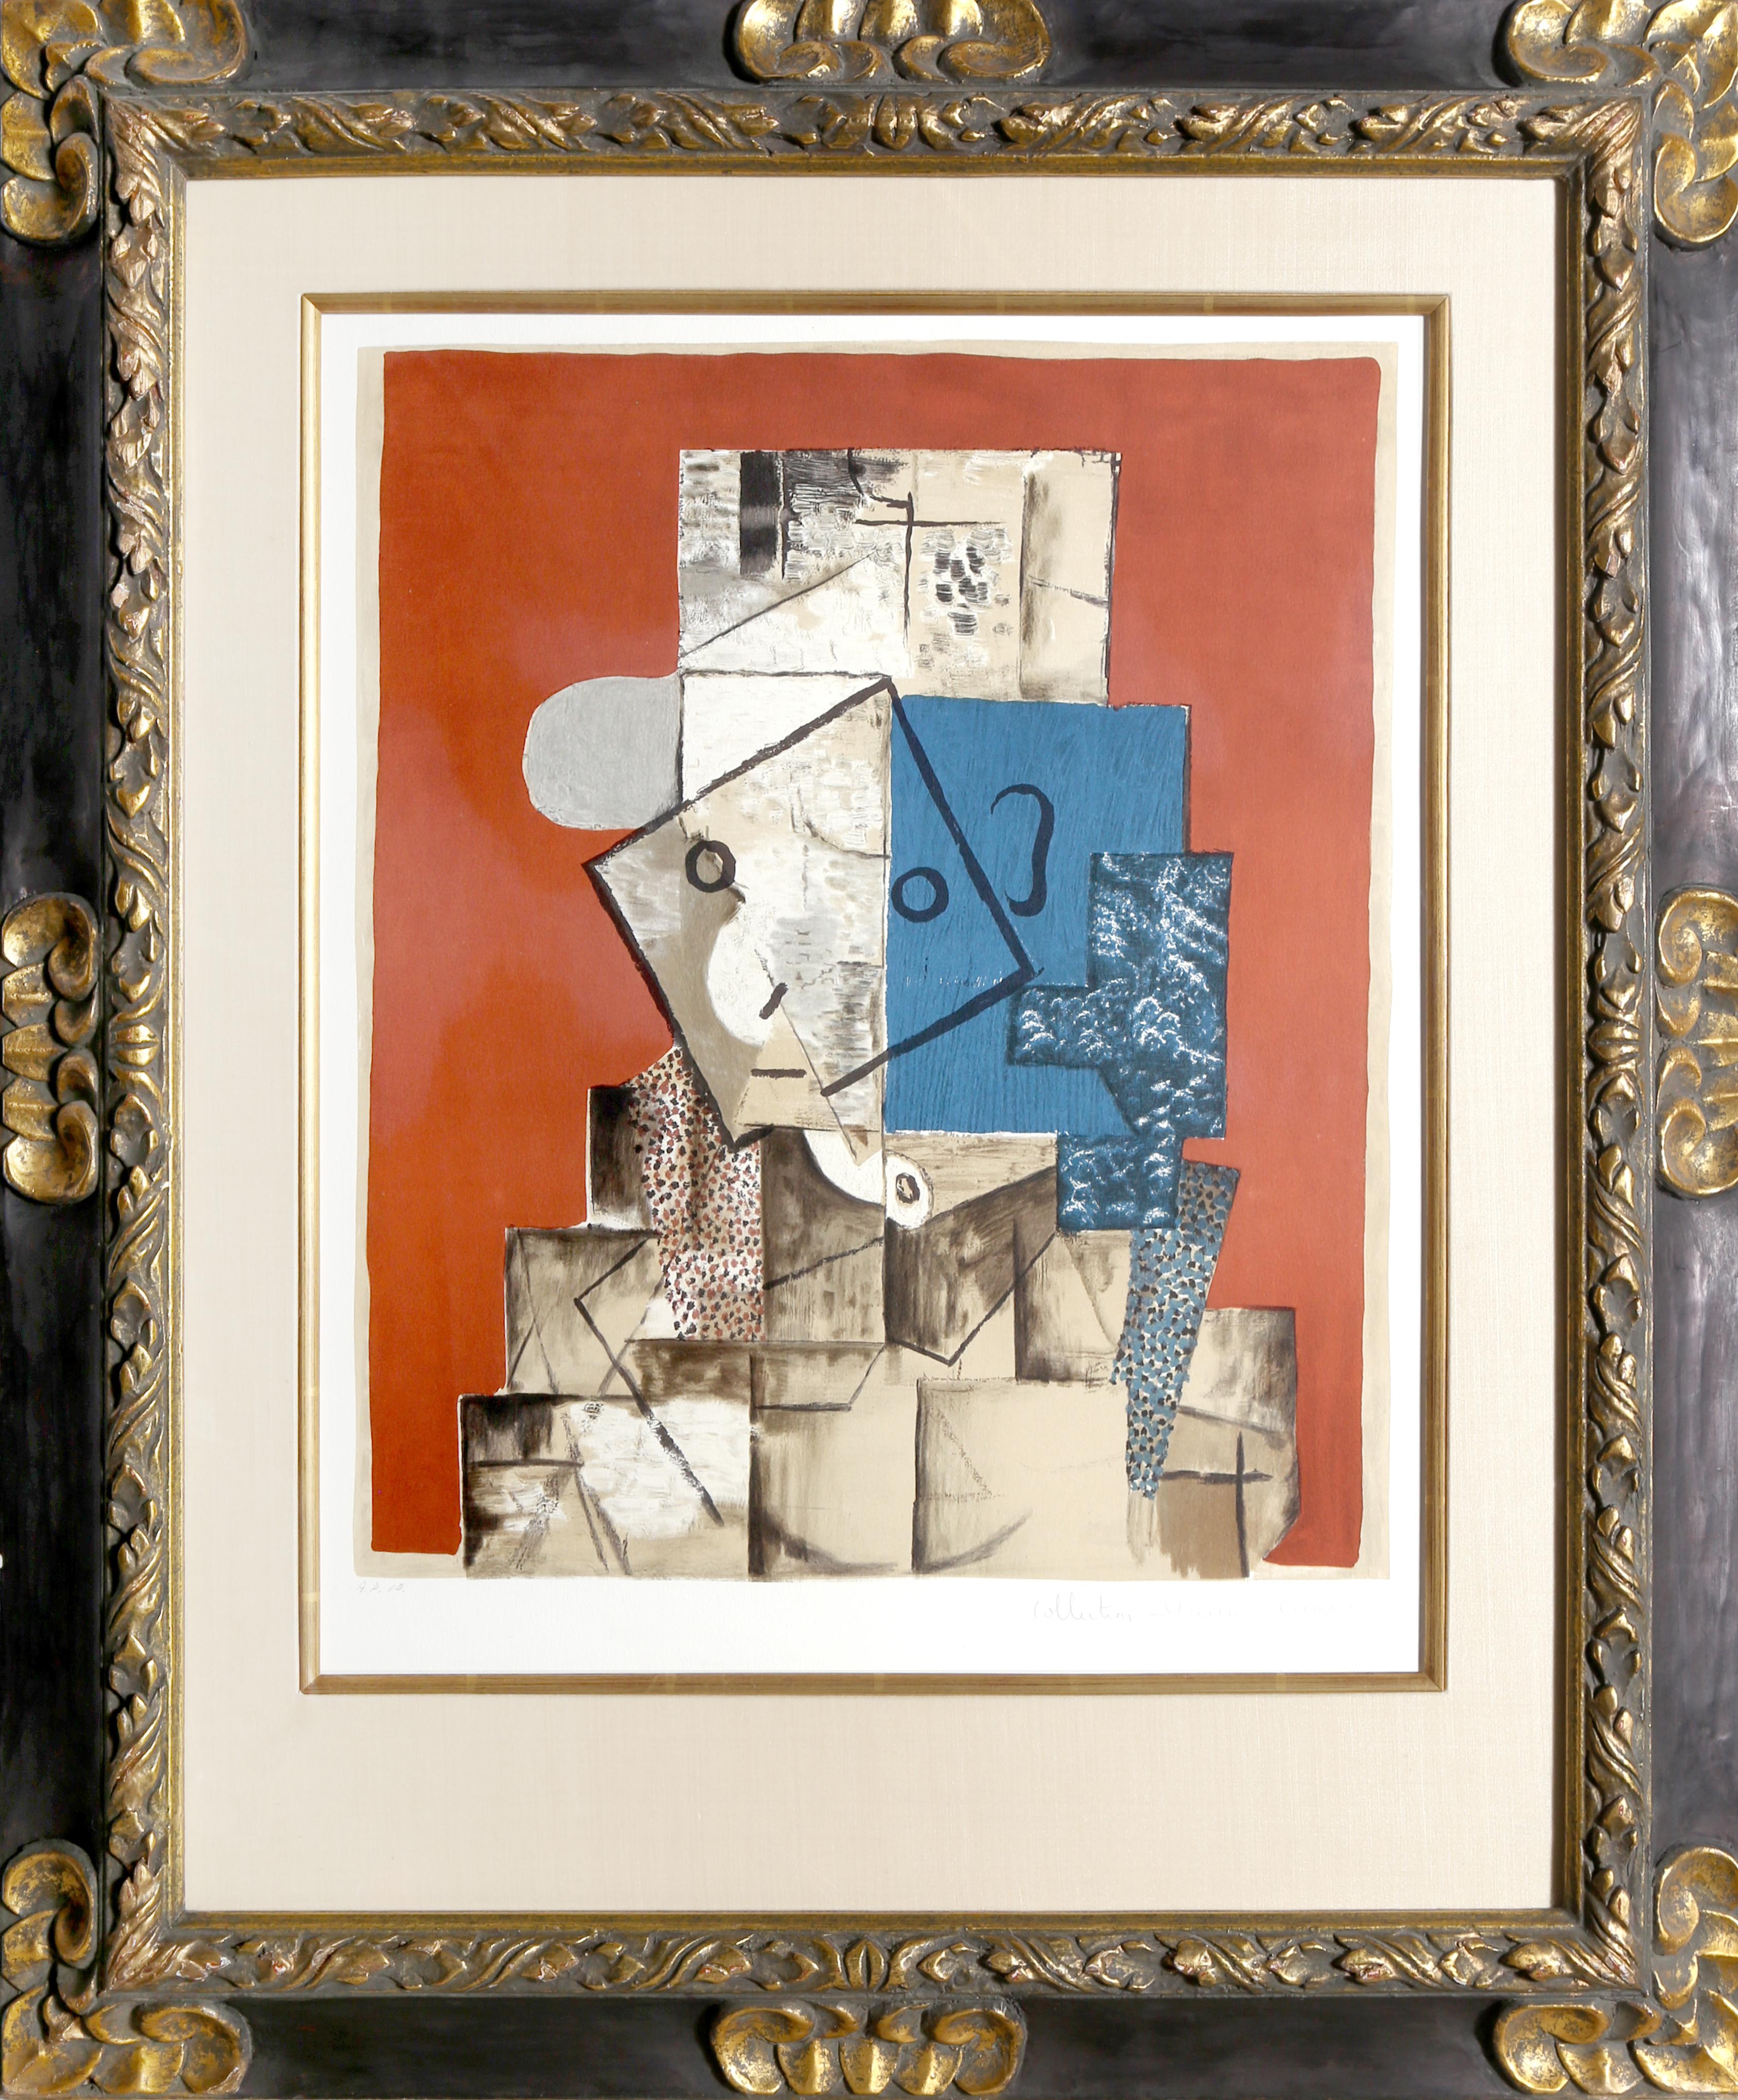 Eine Lithographie aus der Nachlasssammlung Marina Picasso nach dem Gemälde "Visage sur Fond Rouge" von Pablo Picasso.  Das Originalgemälde wurde 1914 fertiggestellt. In den 1970er Jahren, nach Picassos Tod, autorisierte Marina Picasso, seine